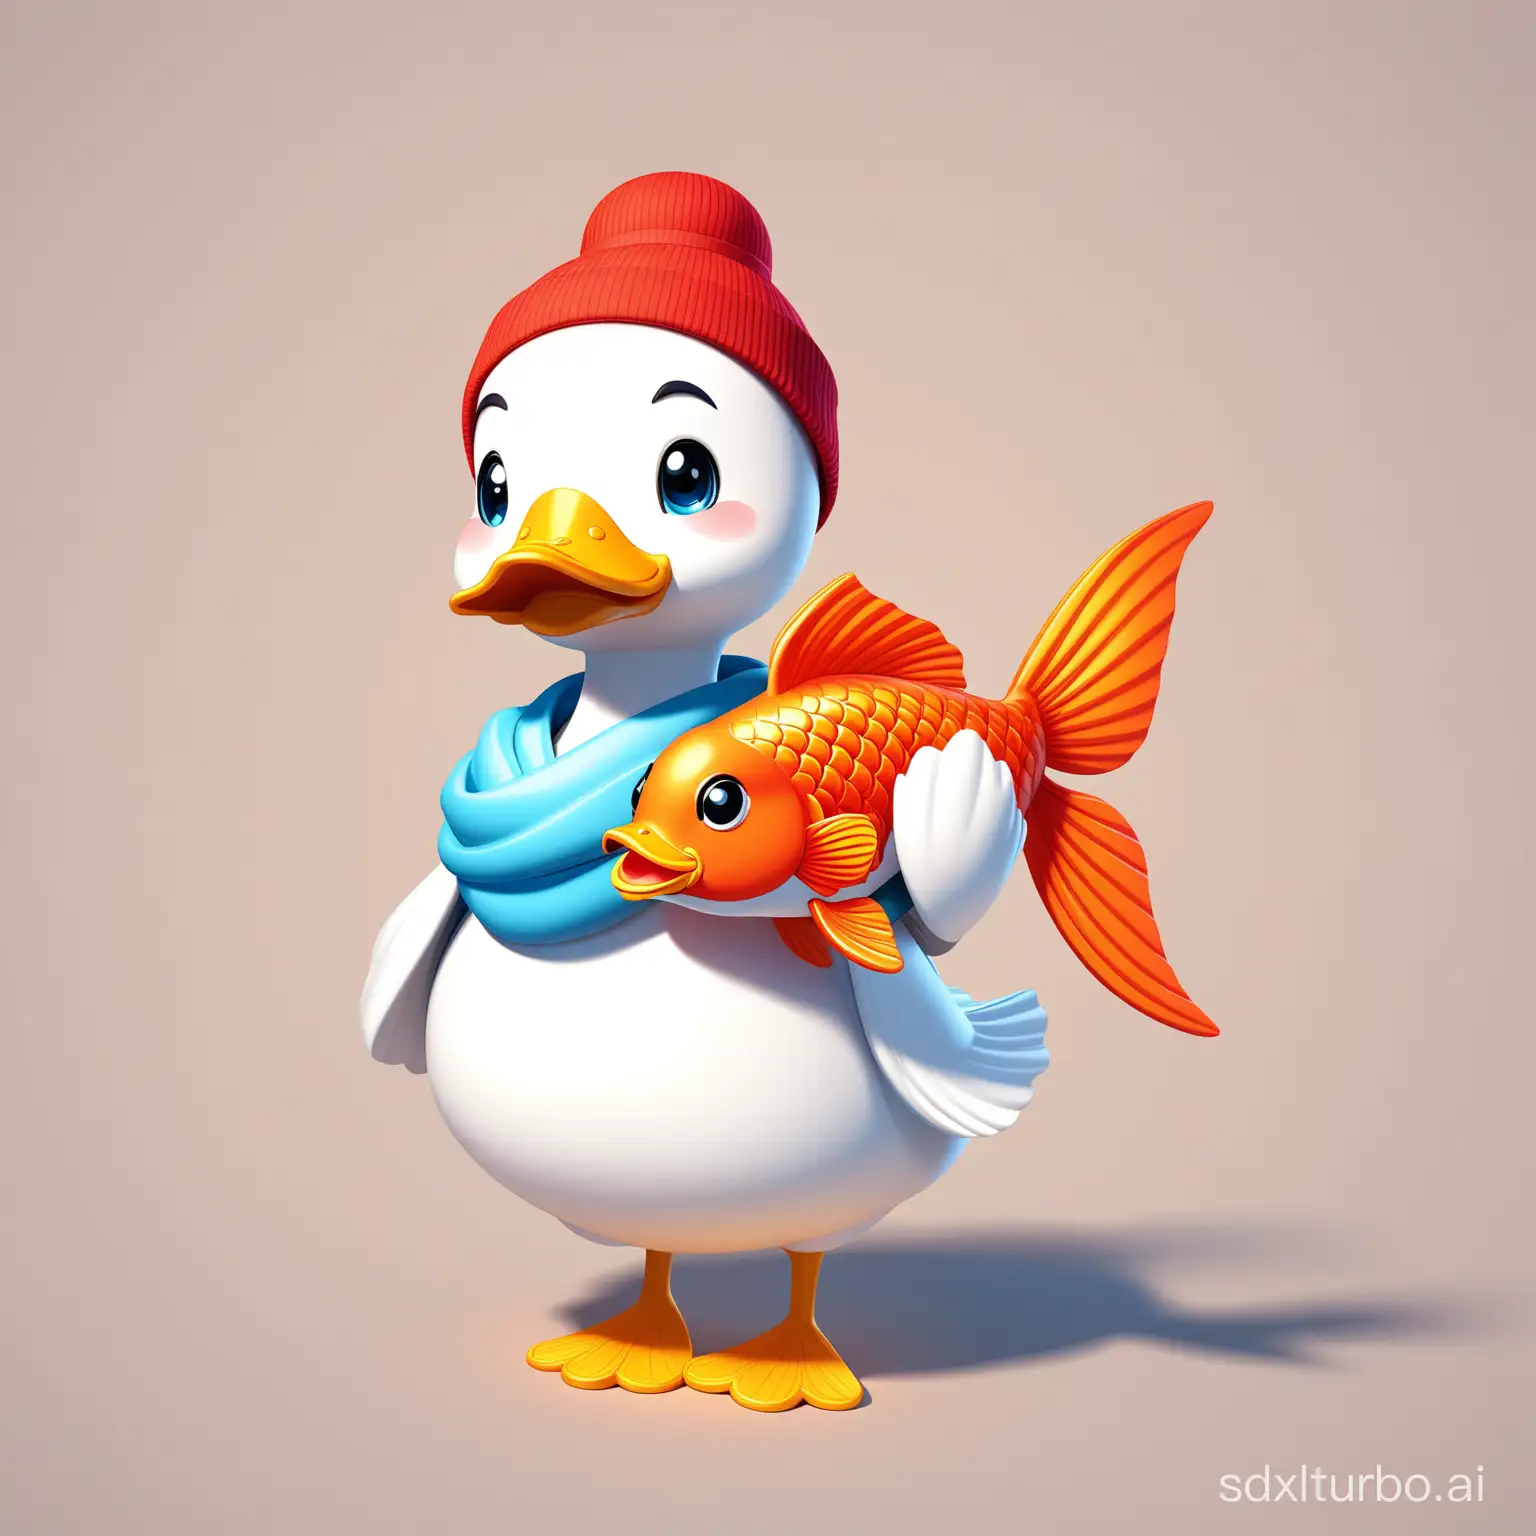 一只白色鸭子，抱着中国锦鲤模样的玩偶，可爱的，休闲服装，3D迪士尼风格